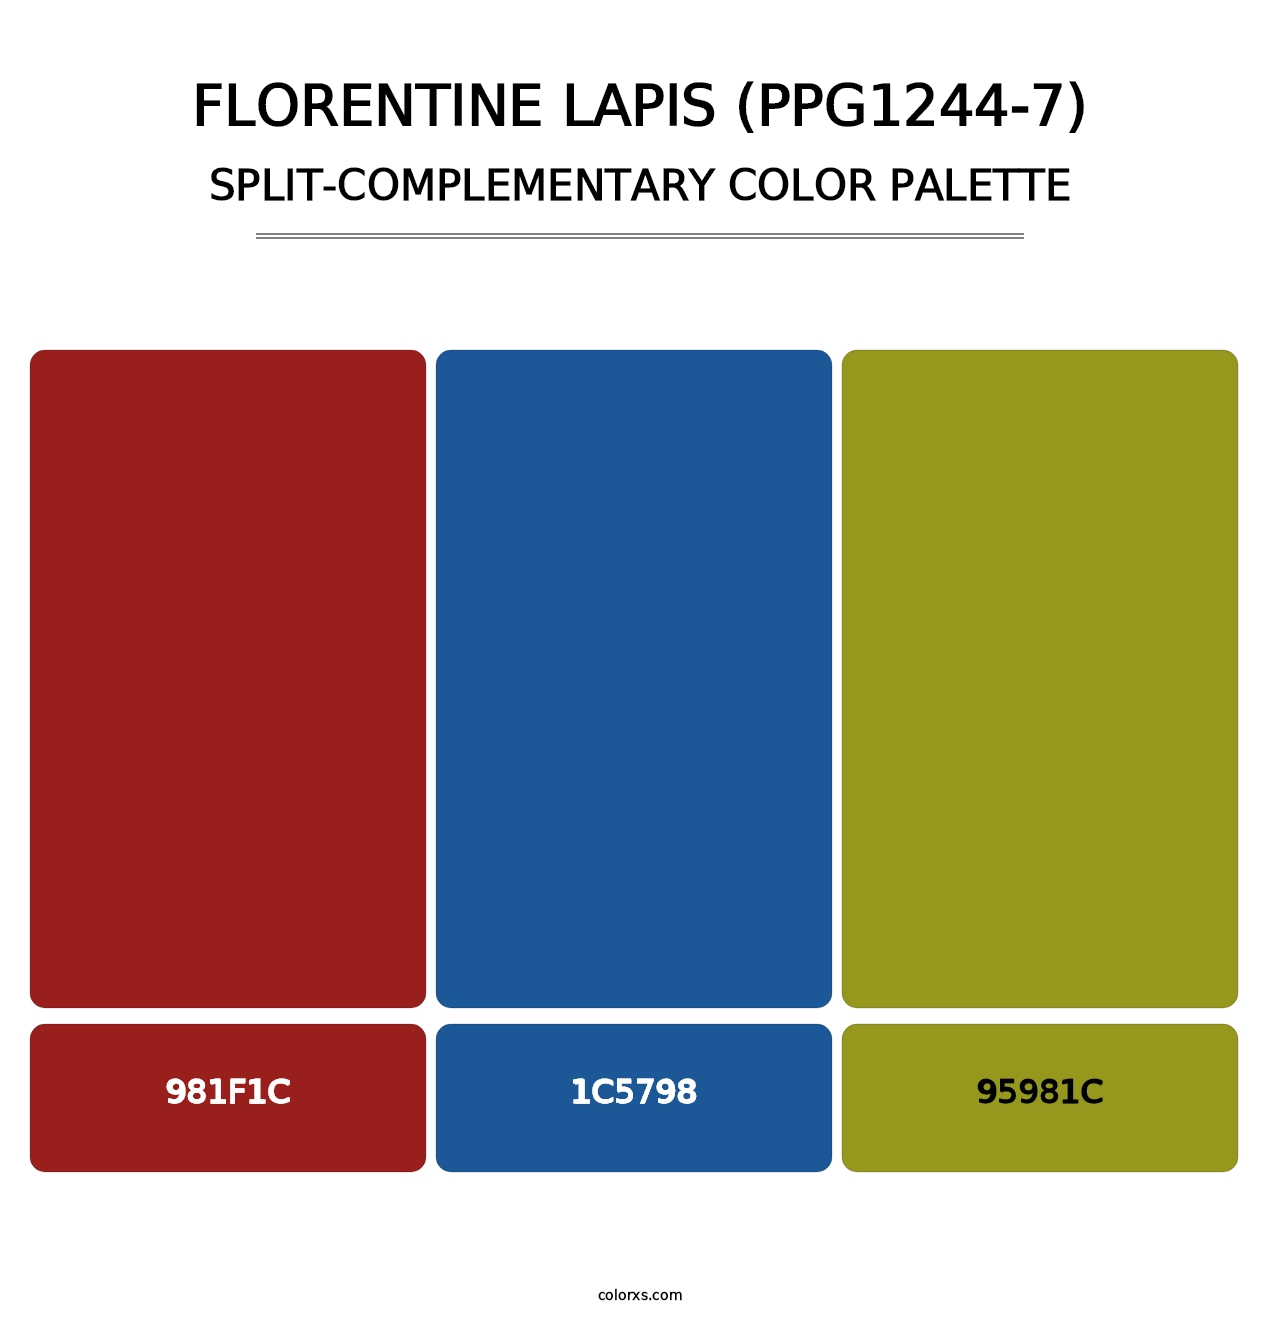 Florentine Lapis (PPG1244-7) - Split-Complementary Color Palette